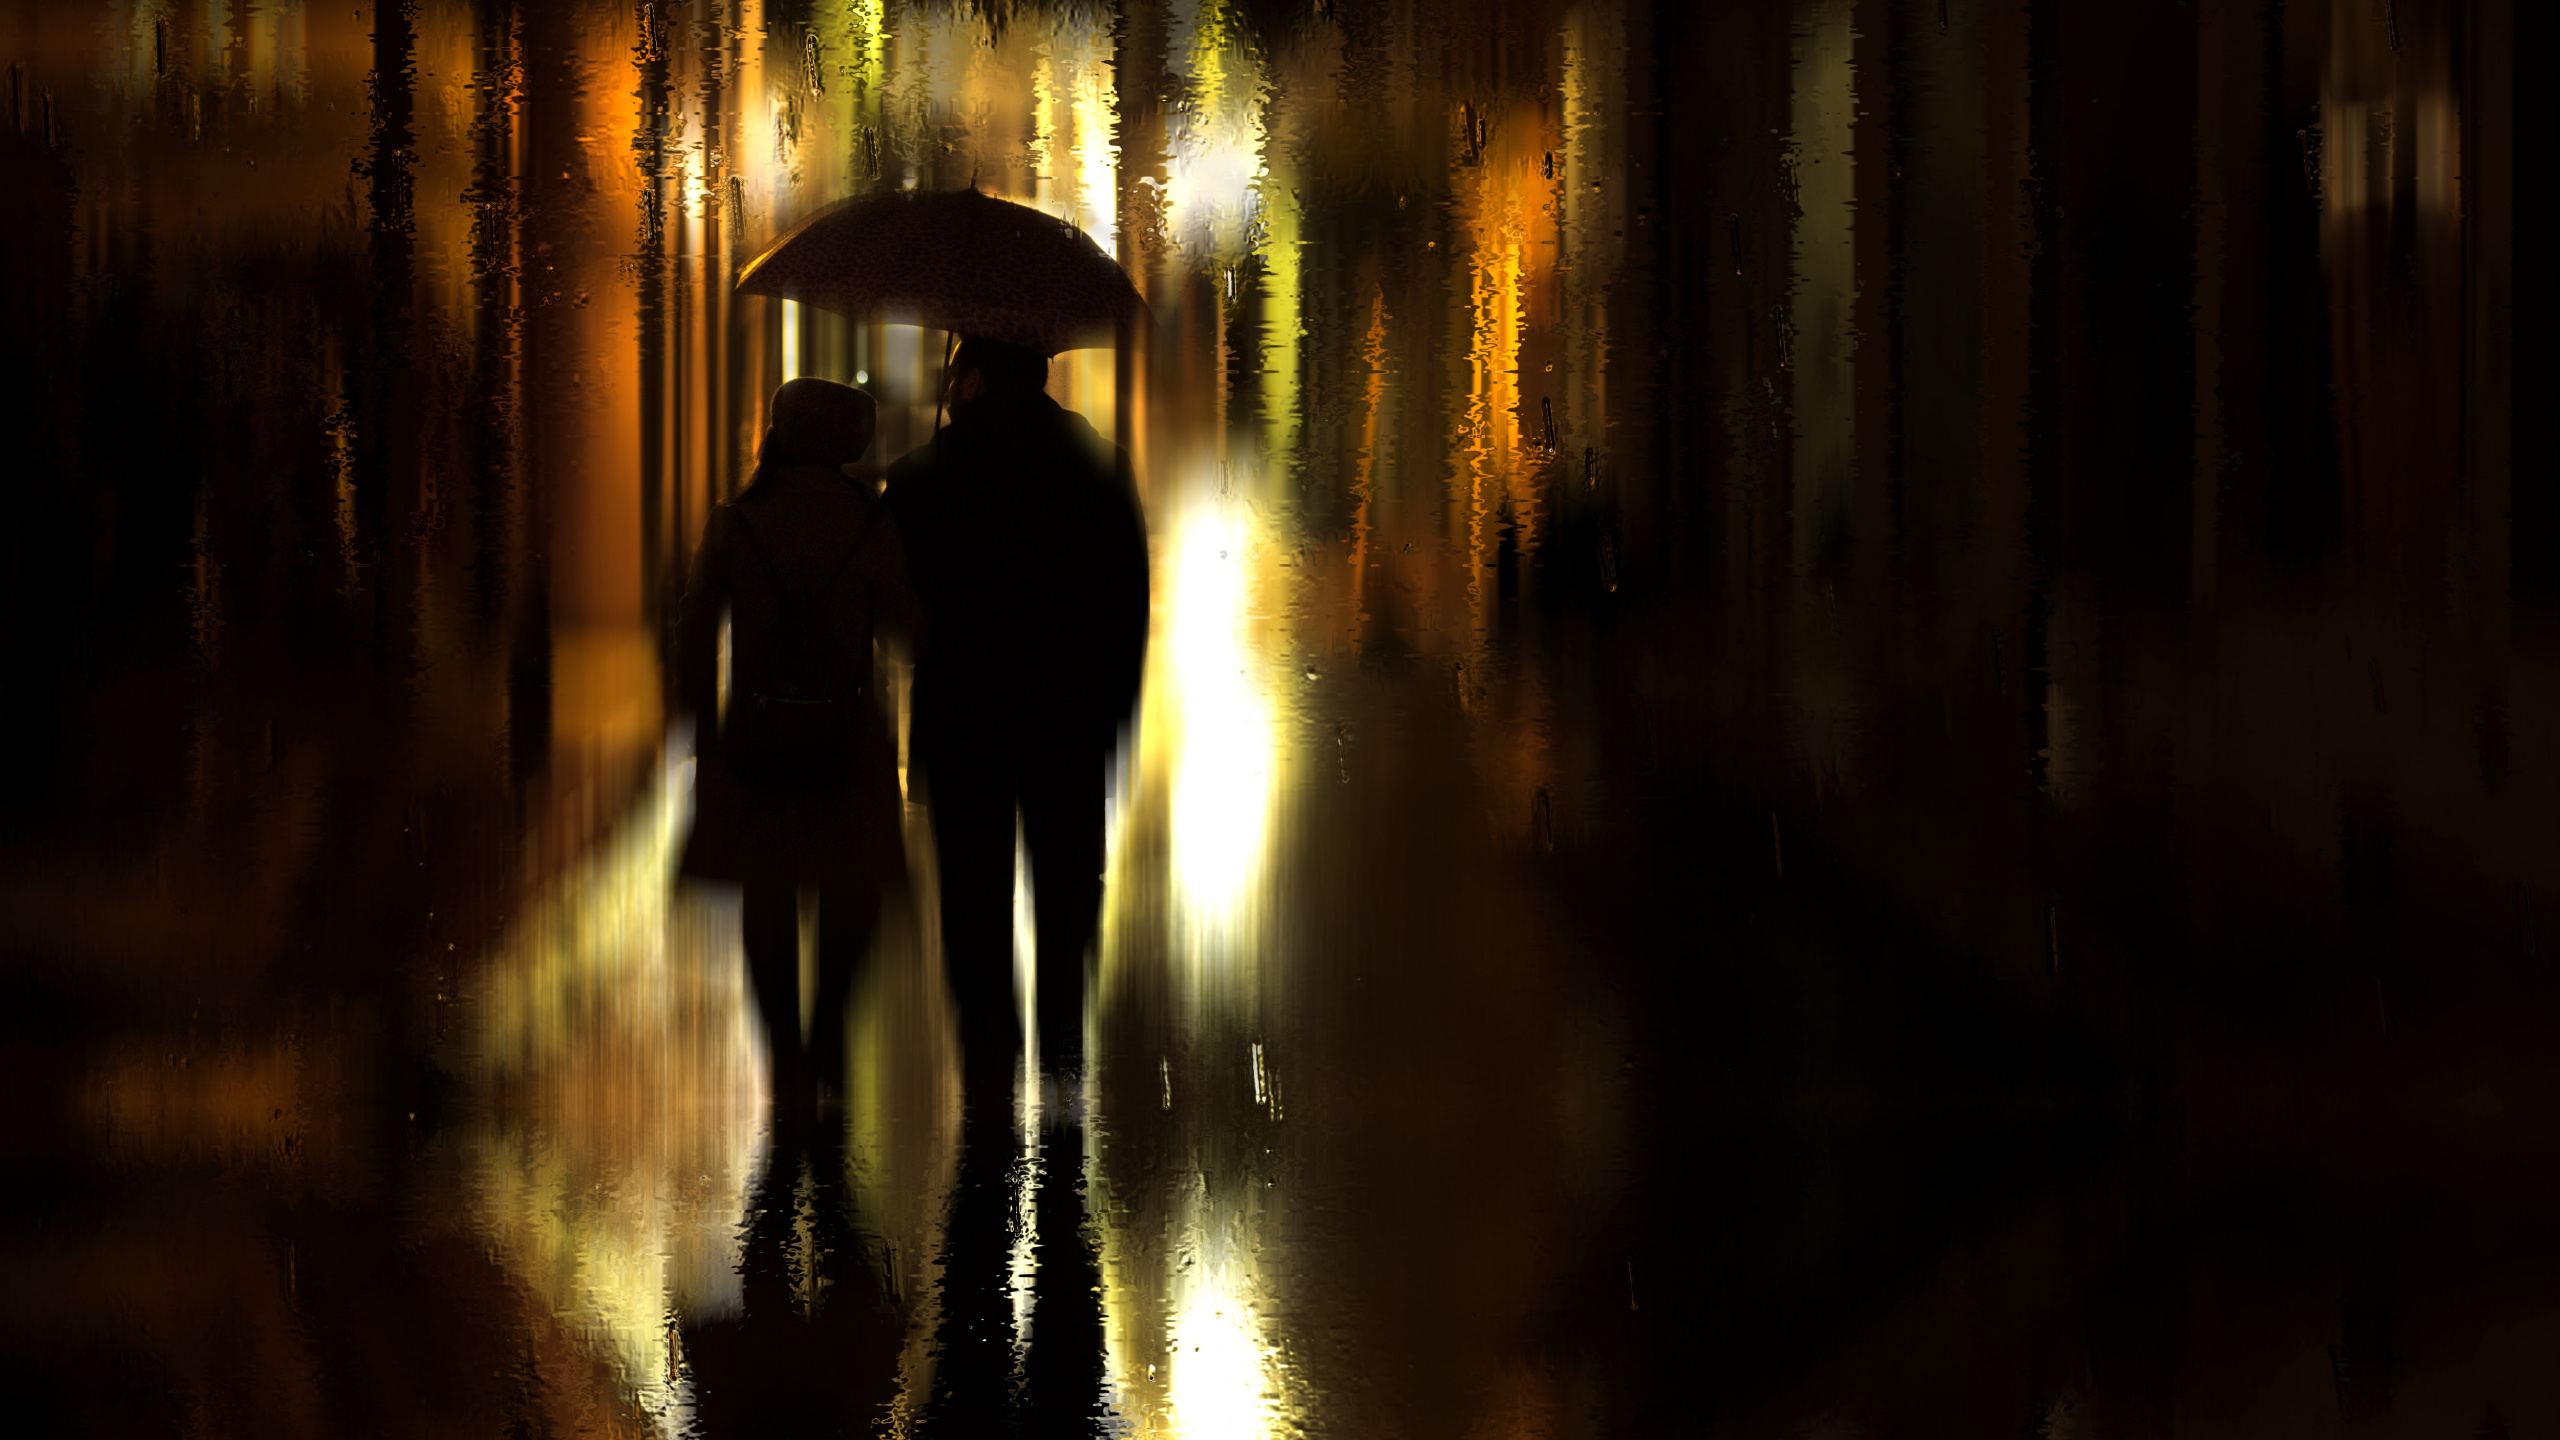 Regen, Reflexion, Nacht, Licht, Abend. Wallpaper in 2560x1440 Resolution